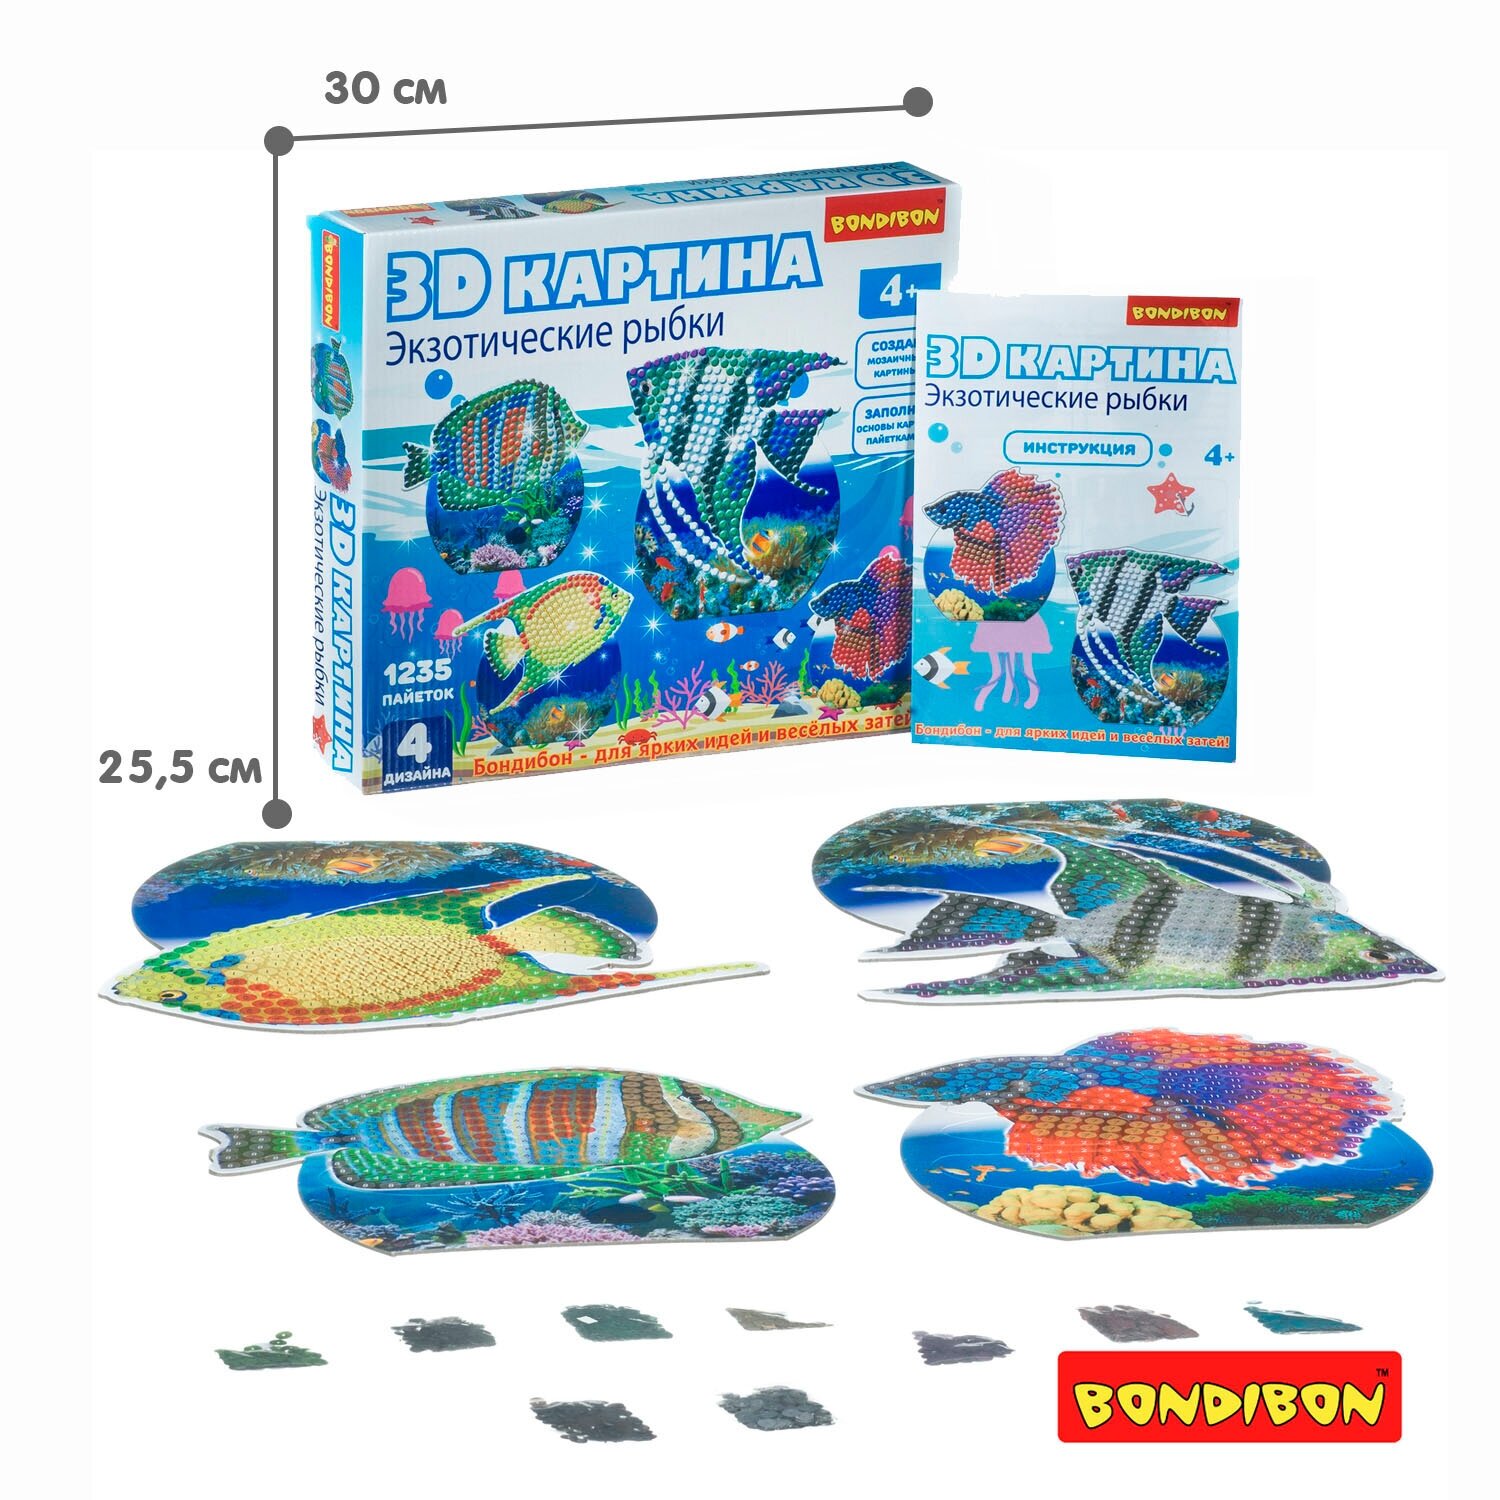 3D картина "Экзотические рыбки" 4 дизайна (ВВ4463) Bondibon - фото №5